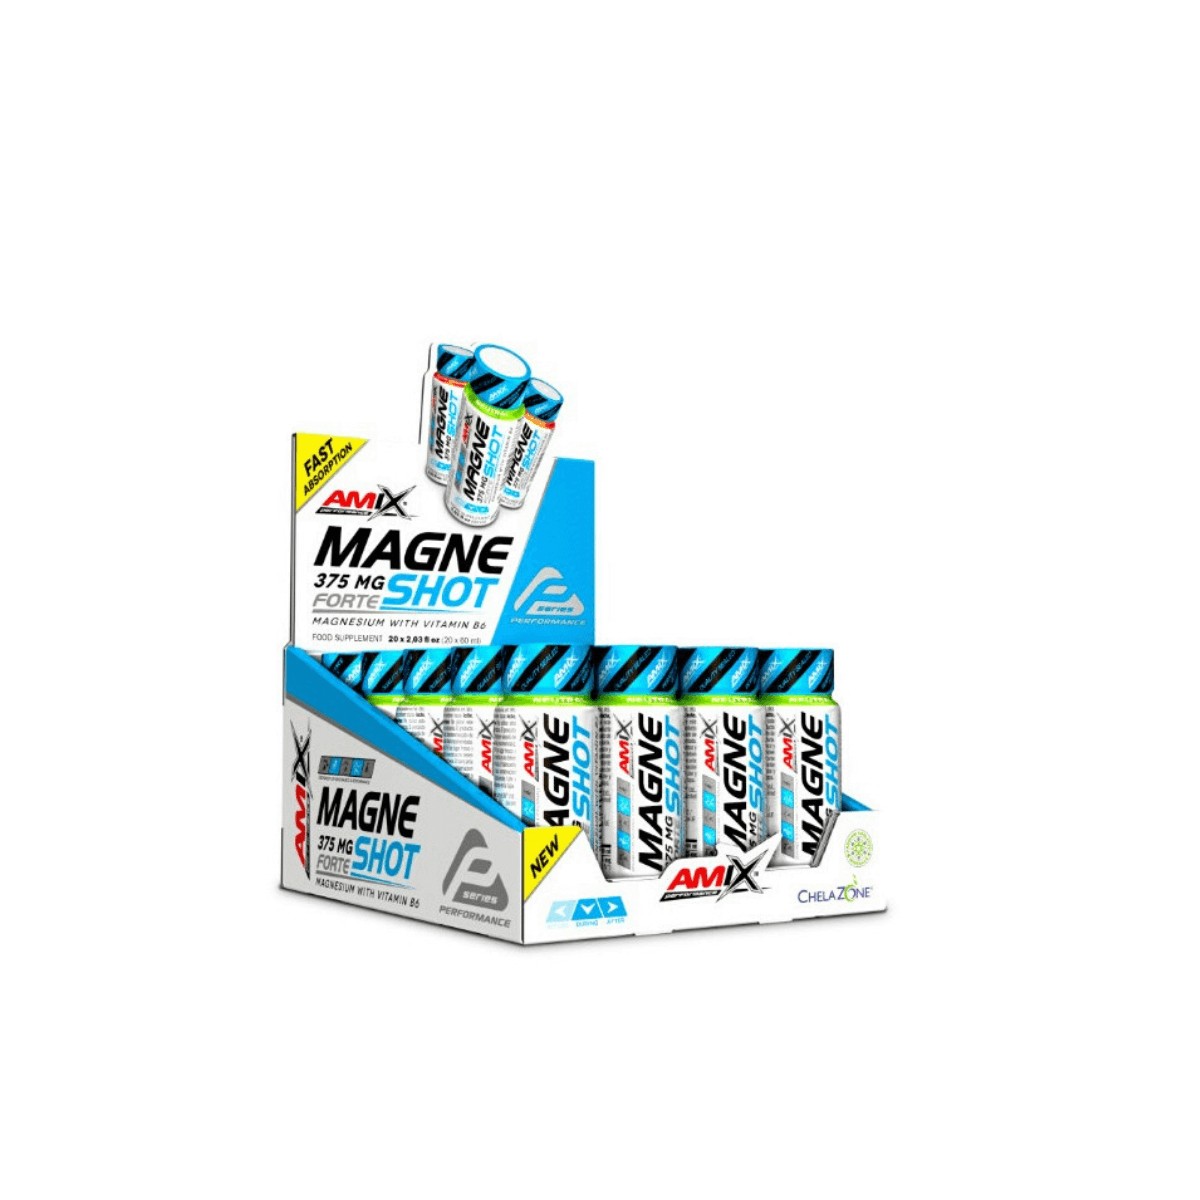 Pro Neu günstig Kaufen-AMIX MagneShot Forte Mango 375 MG 20x60ML. AMIX MagneShot Forte Mango 375 MG 20x60ML <![CDATA[AMIX MagneShot Forte Mango 375 MG 20x60ML AMIX Performance MagneShot Forte 375 mg ist ein neues Produkt AMIX PERFORMANCE, ein ultrakonzentriertes Magnesium, das 